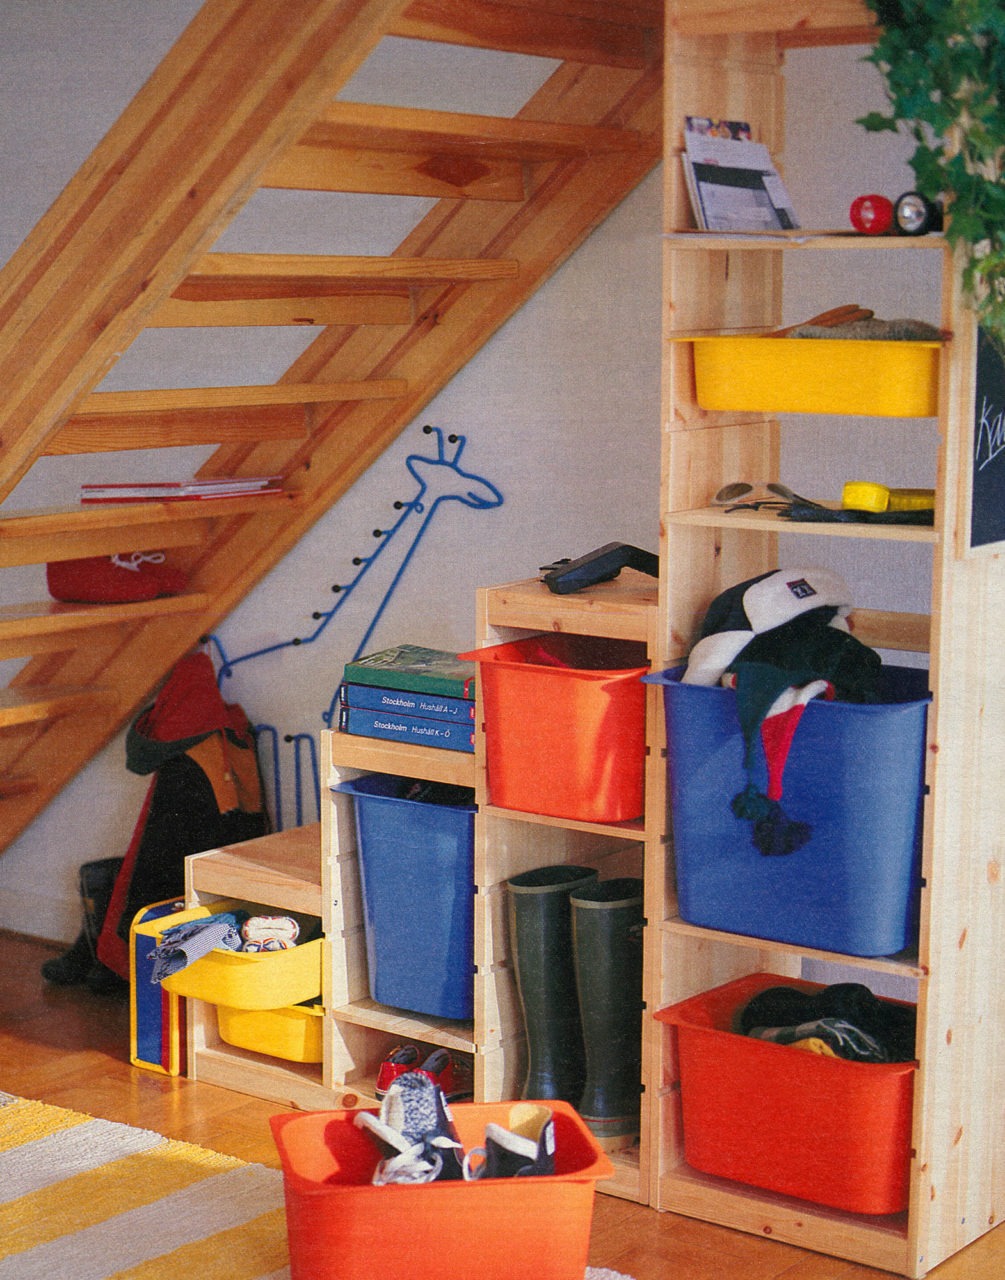 Ensemble de blocs de rangement en escalier en bois clair, avec tiroirs colorés, placé sous un escalier ouvert en bois clair.